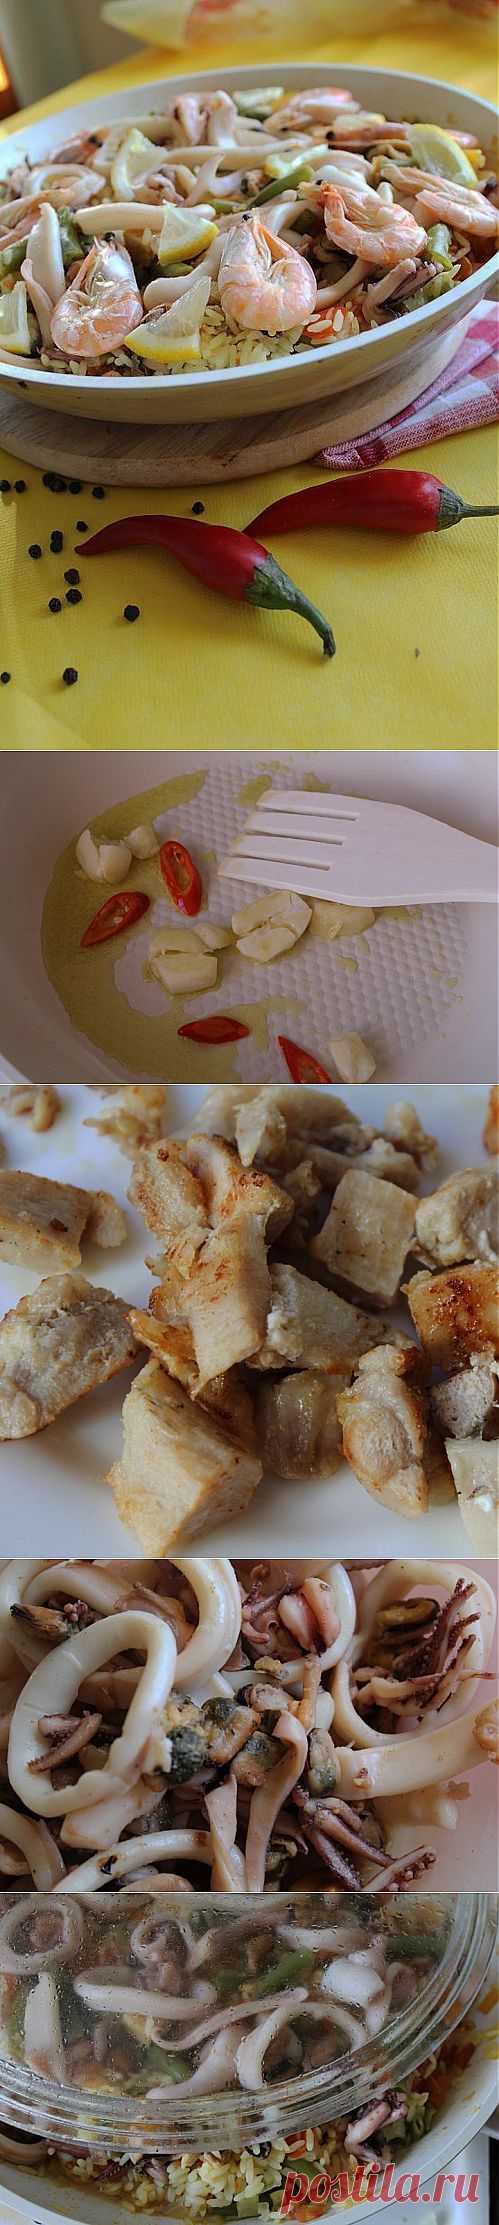 (1) Паэлья - пошаговый рецепт с фото - паэлья - как готовить: ингредиенты, состав, время приготовления - Леди@Mail.Ru